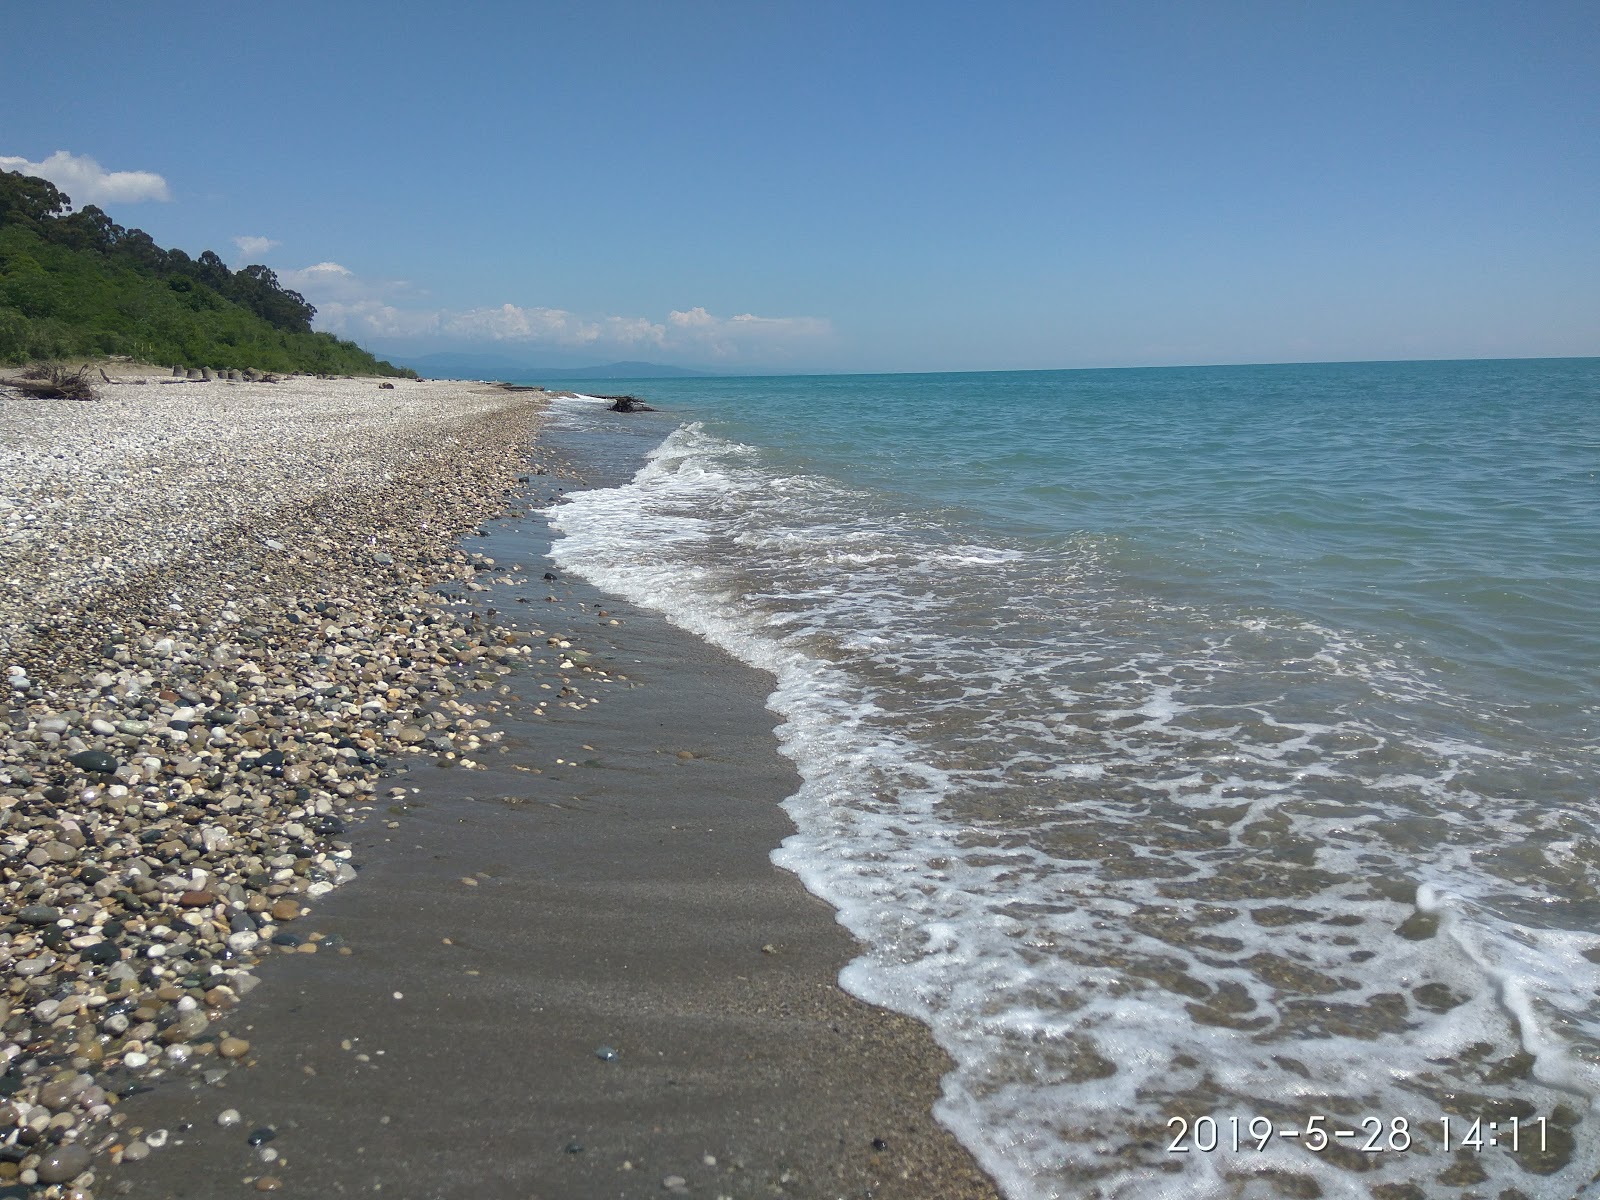 Zdjęcie Primorskoe beach z powierzchnią piasek z kamykami